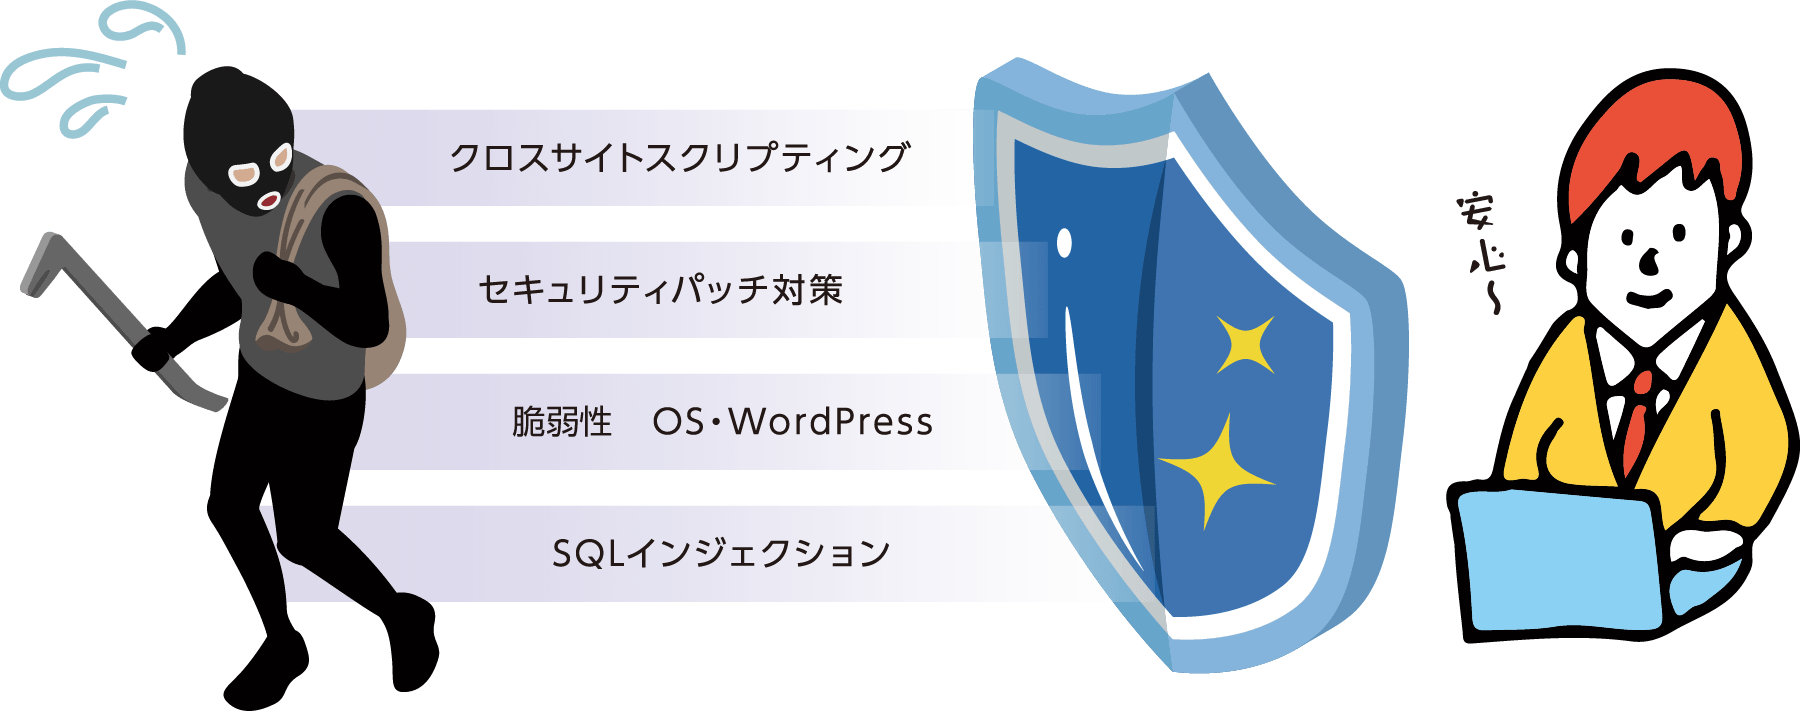 クロスサイトスクリプティング、セキュリティパッチ対策、静寂性 OS・WordPress、SQLインジェクション